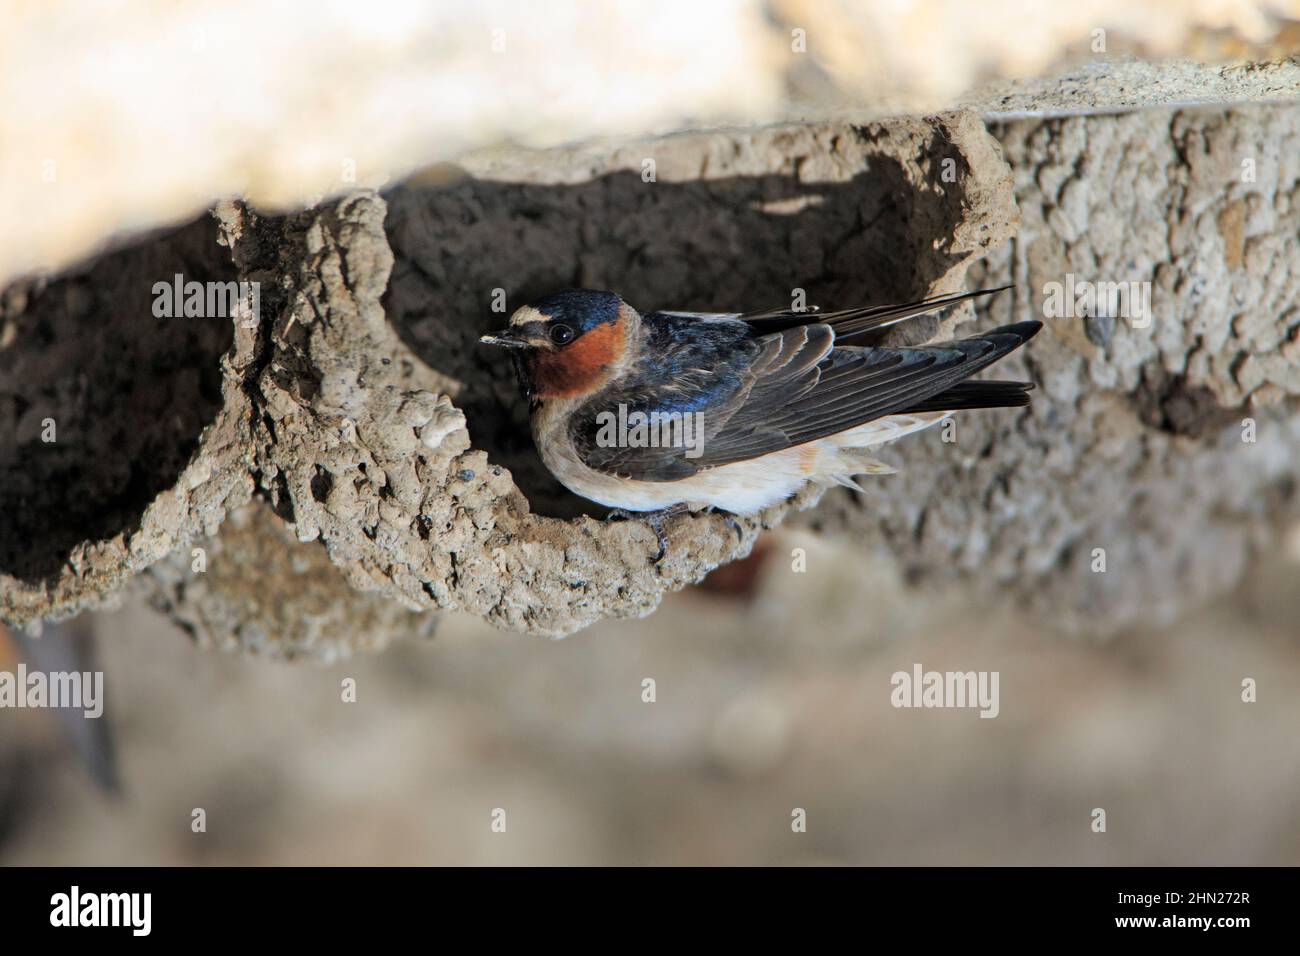 Cliff swallow (Hirundo pyrrhonota) bird at half finished nest, under bridge, Yellowstone NP, Wyoming Stock Photo